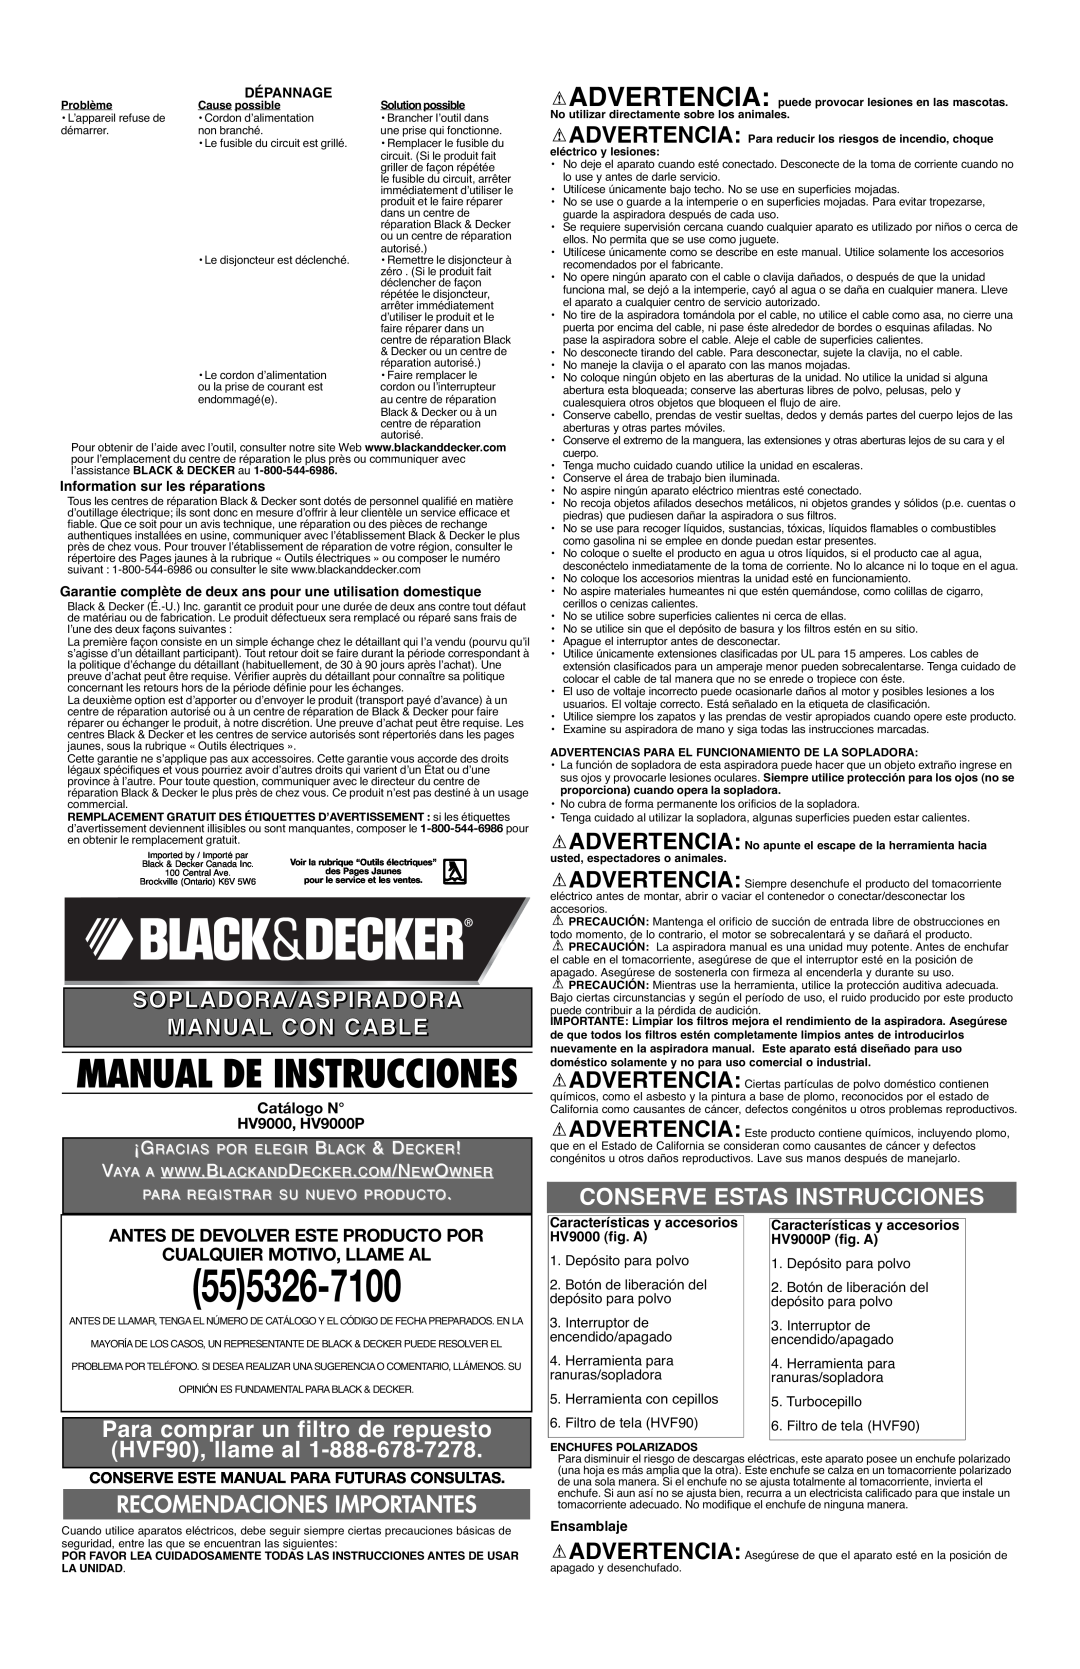 Black & Decker HV9000 Manual De Instrucciones, Sopladora/Aspiradora Manual Con Cable, Conserve Estas Instrucciones 